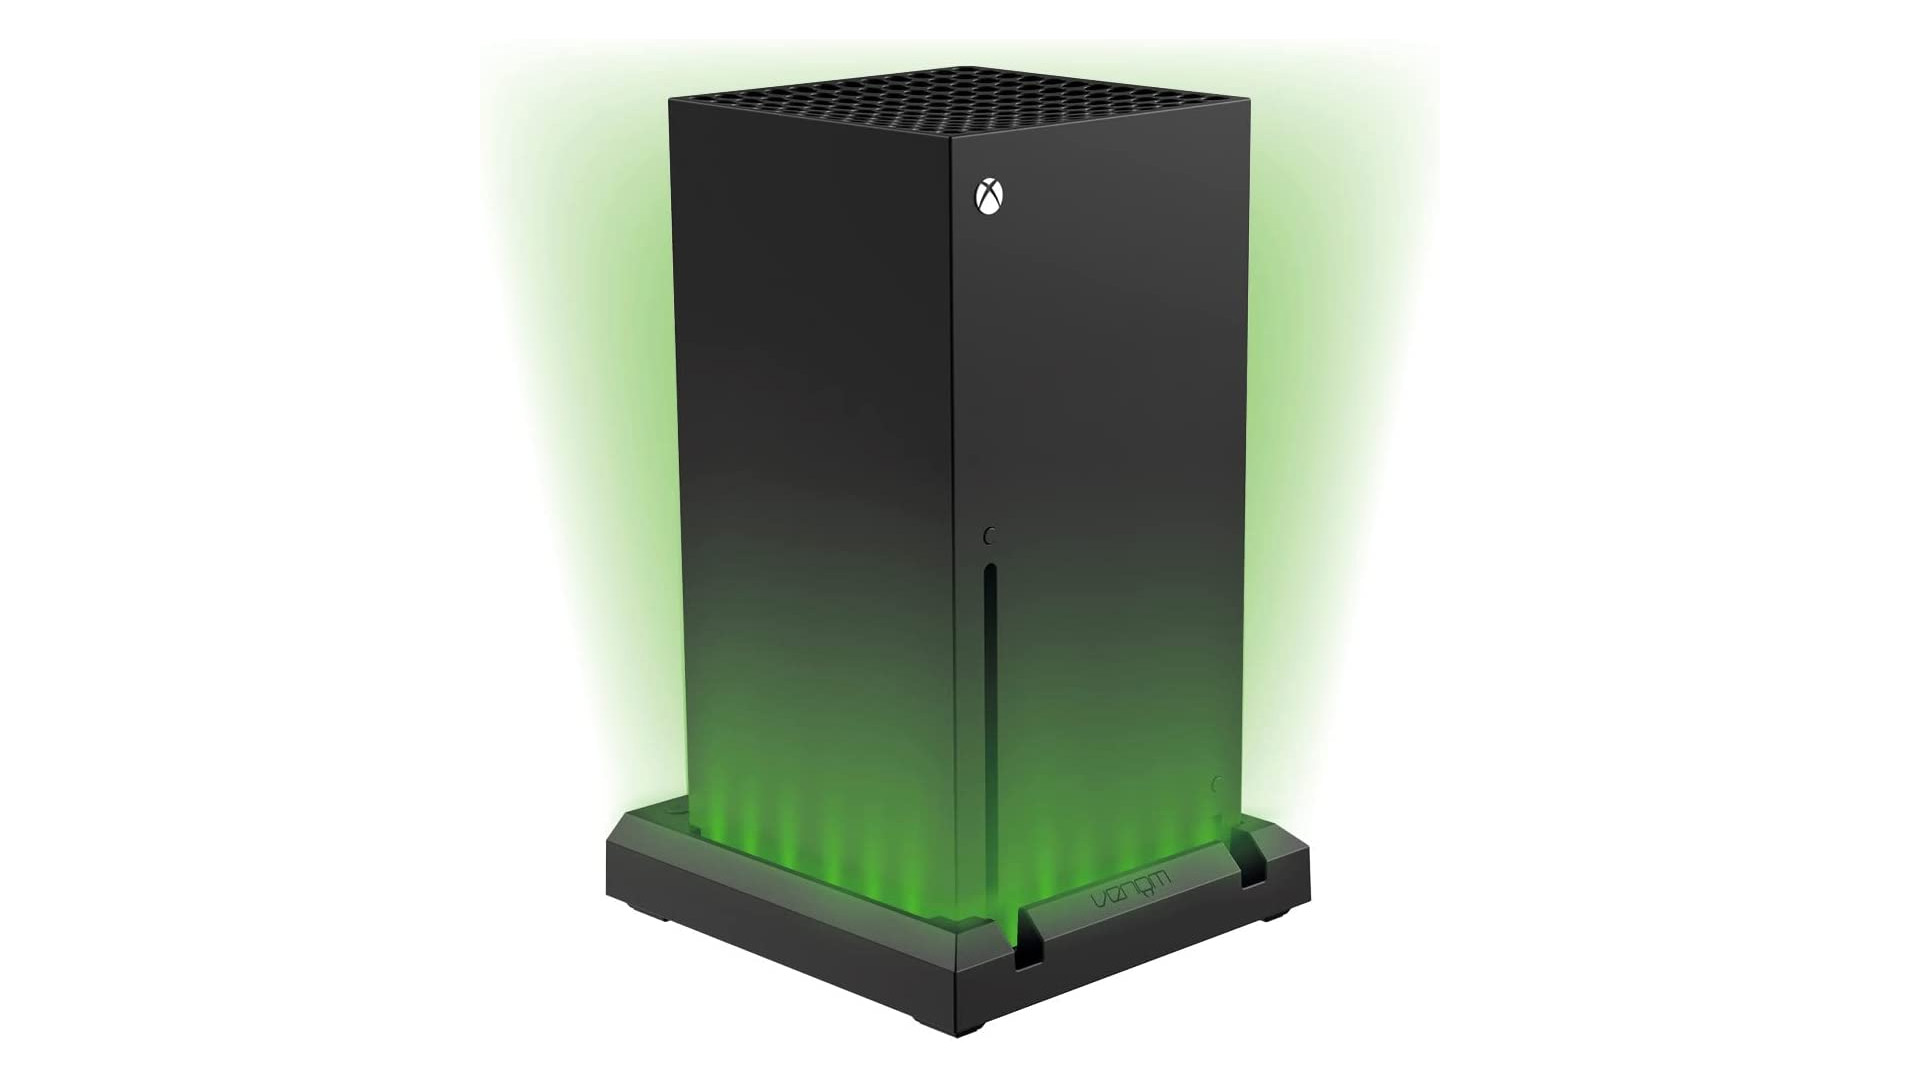 Voici le grille-pain Xbox Series S officiel, pour aller avec le mini-frigo